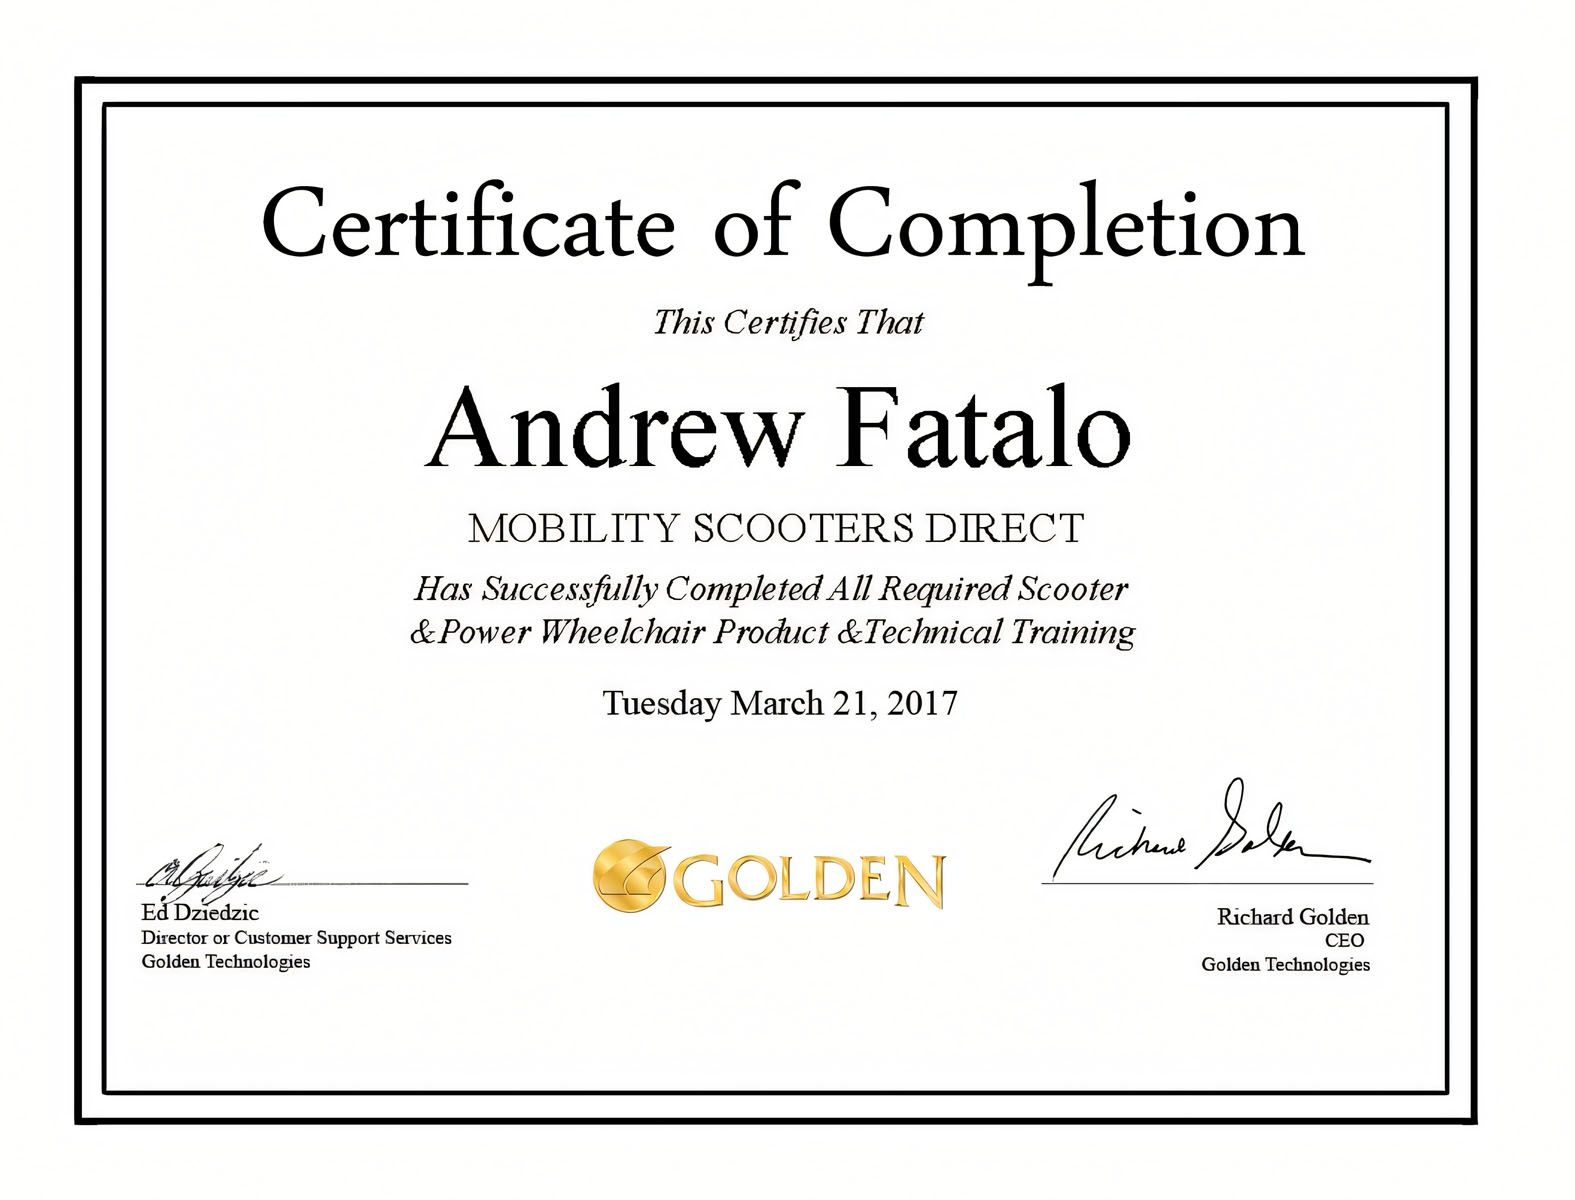 Golden Technologies Certificate